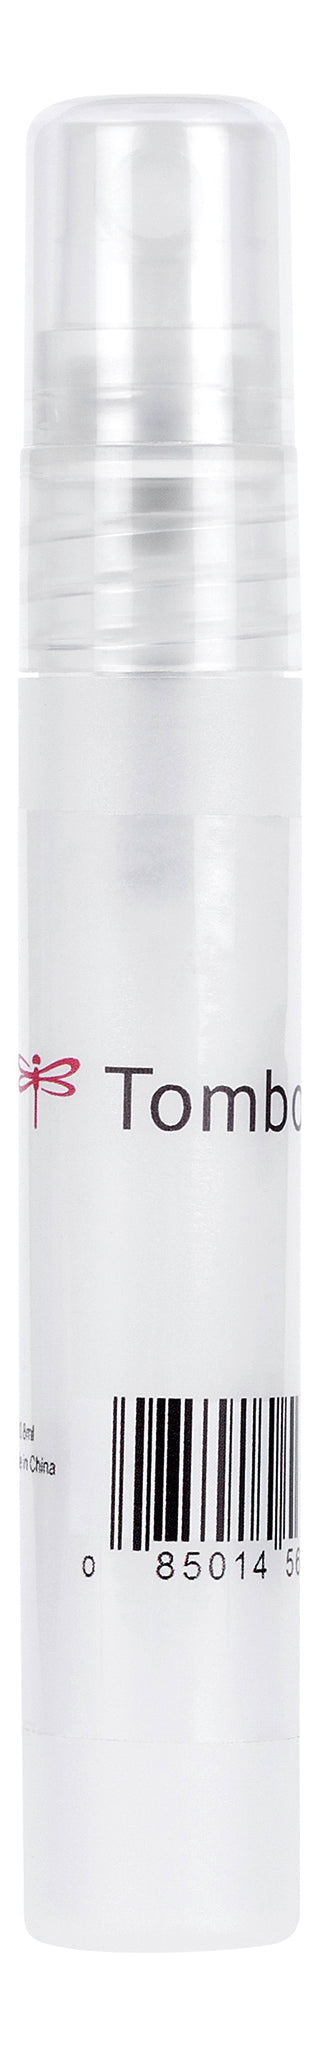 Tombow Blending sprayflaska 3st